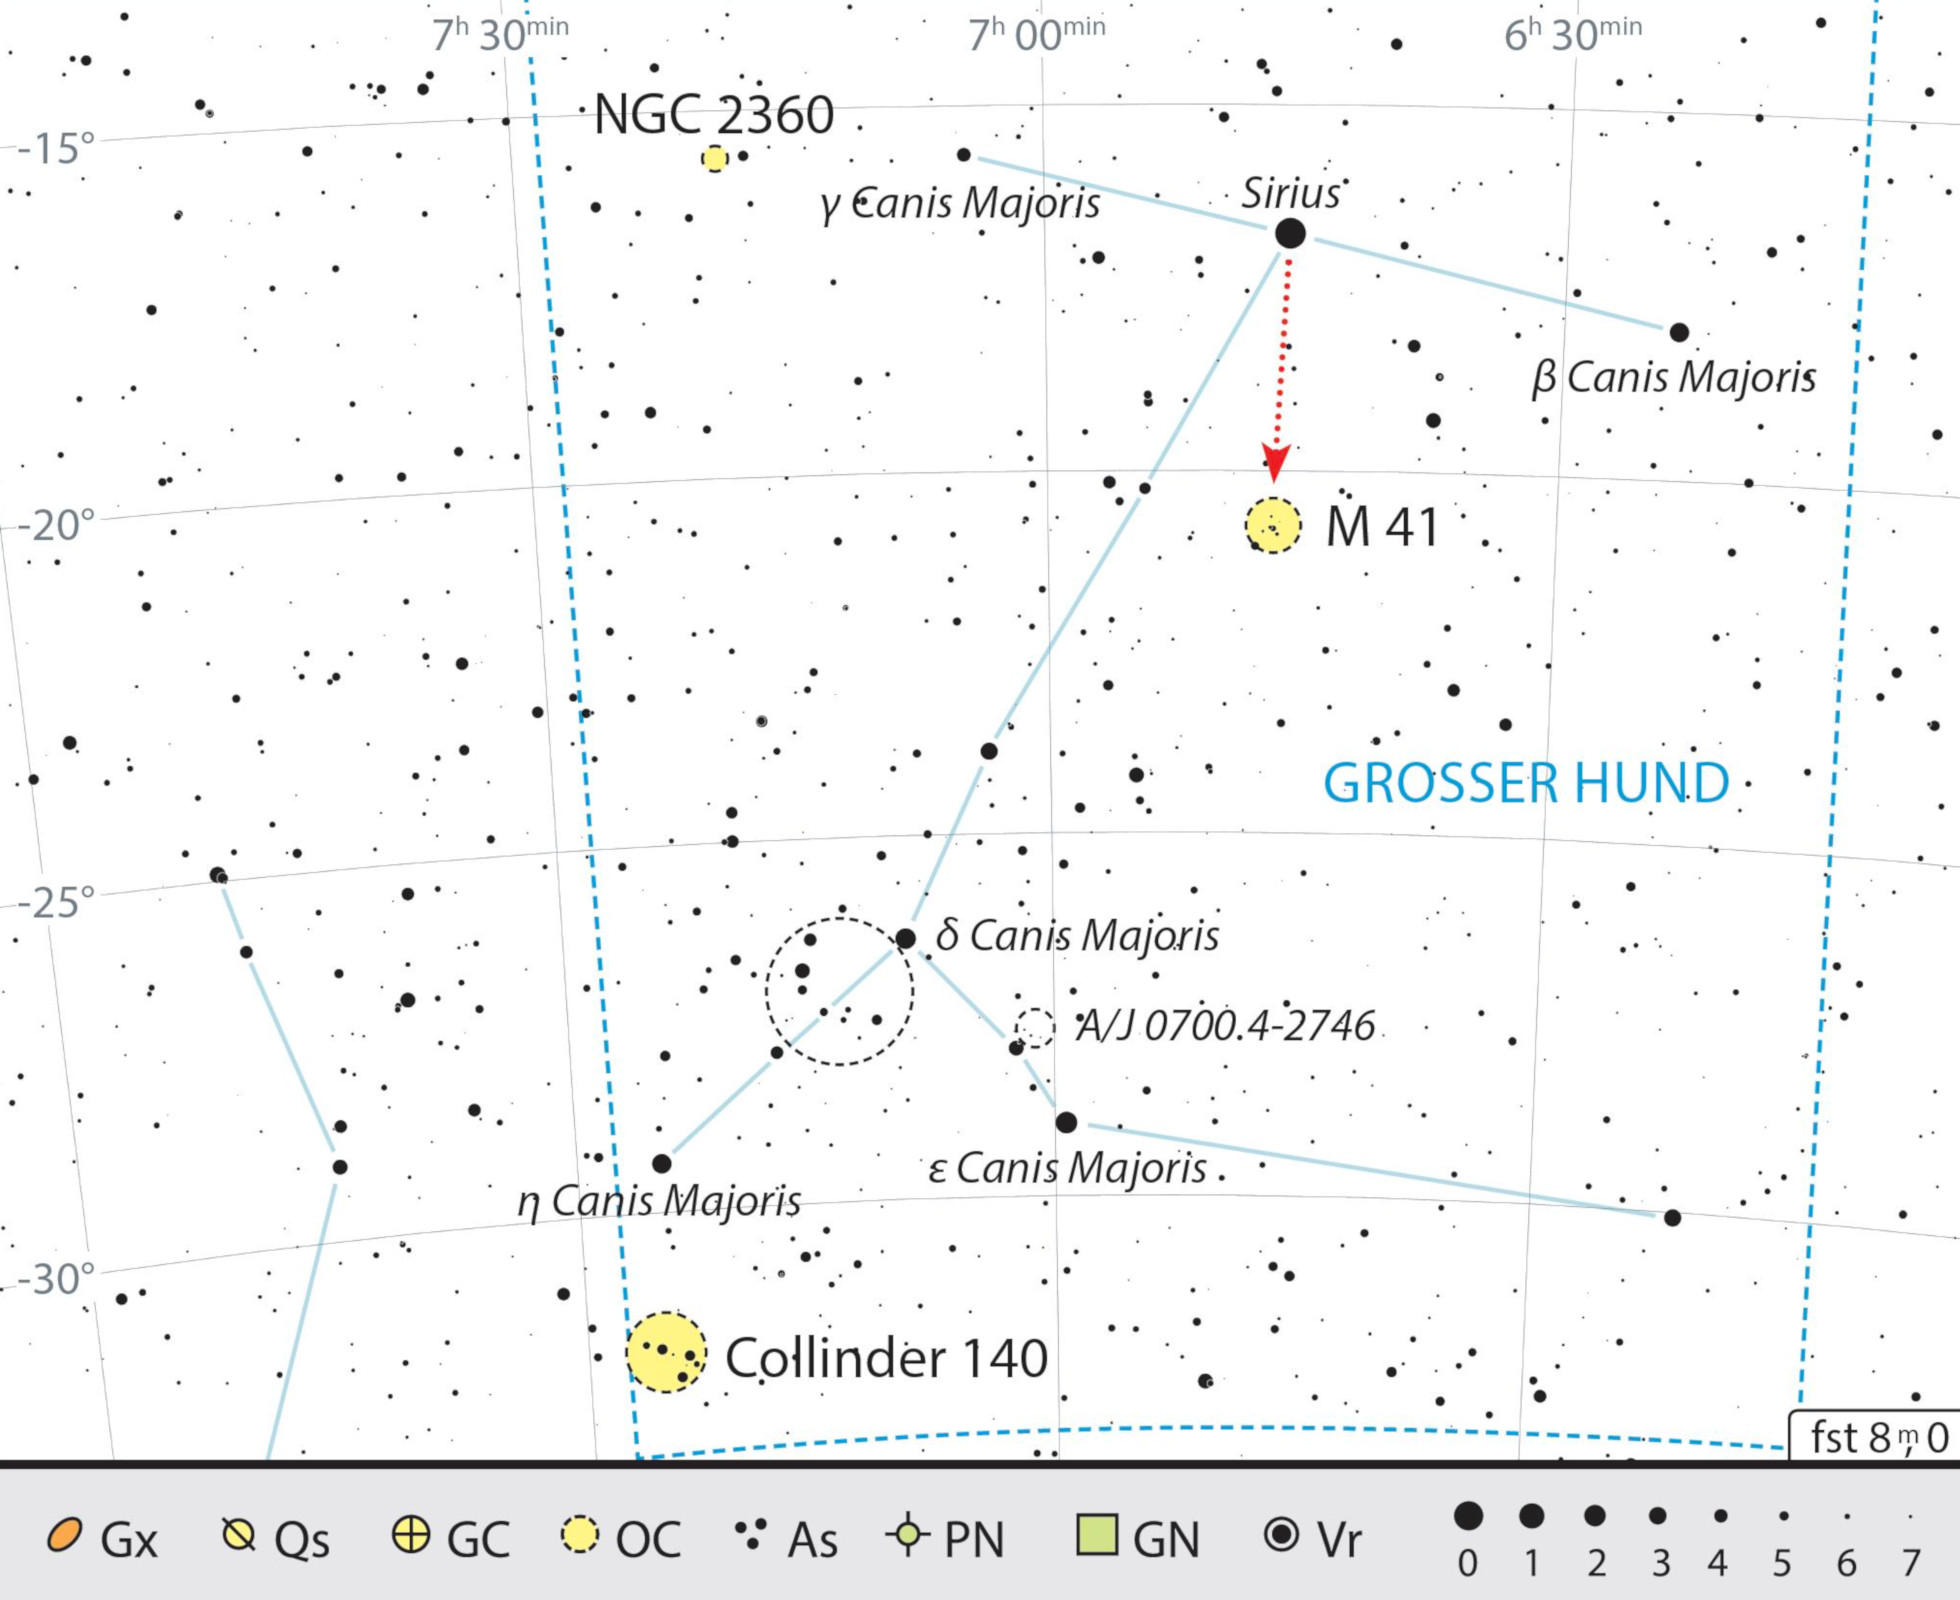 Mappa celeste degli oggetti visibili al binocolo nella costellazione del Cane Maggiore. J. Scholten